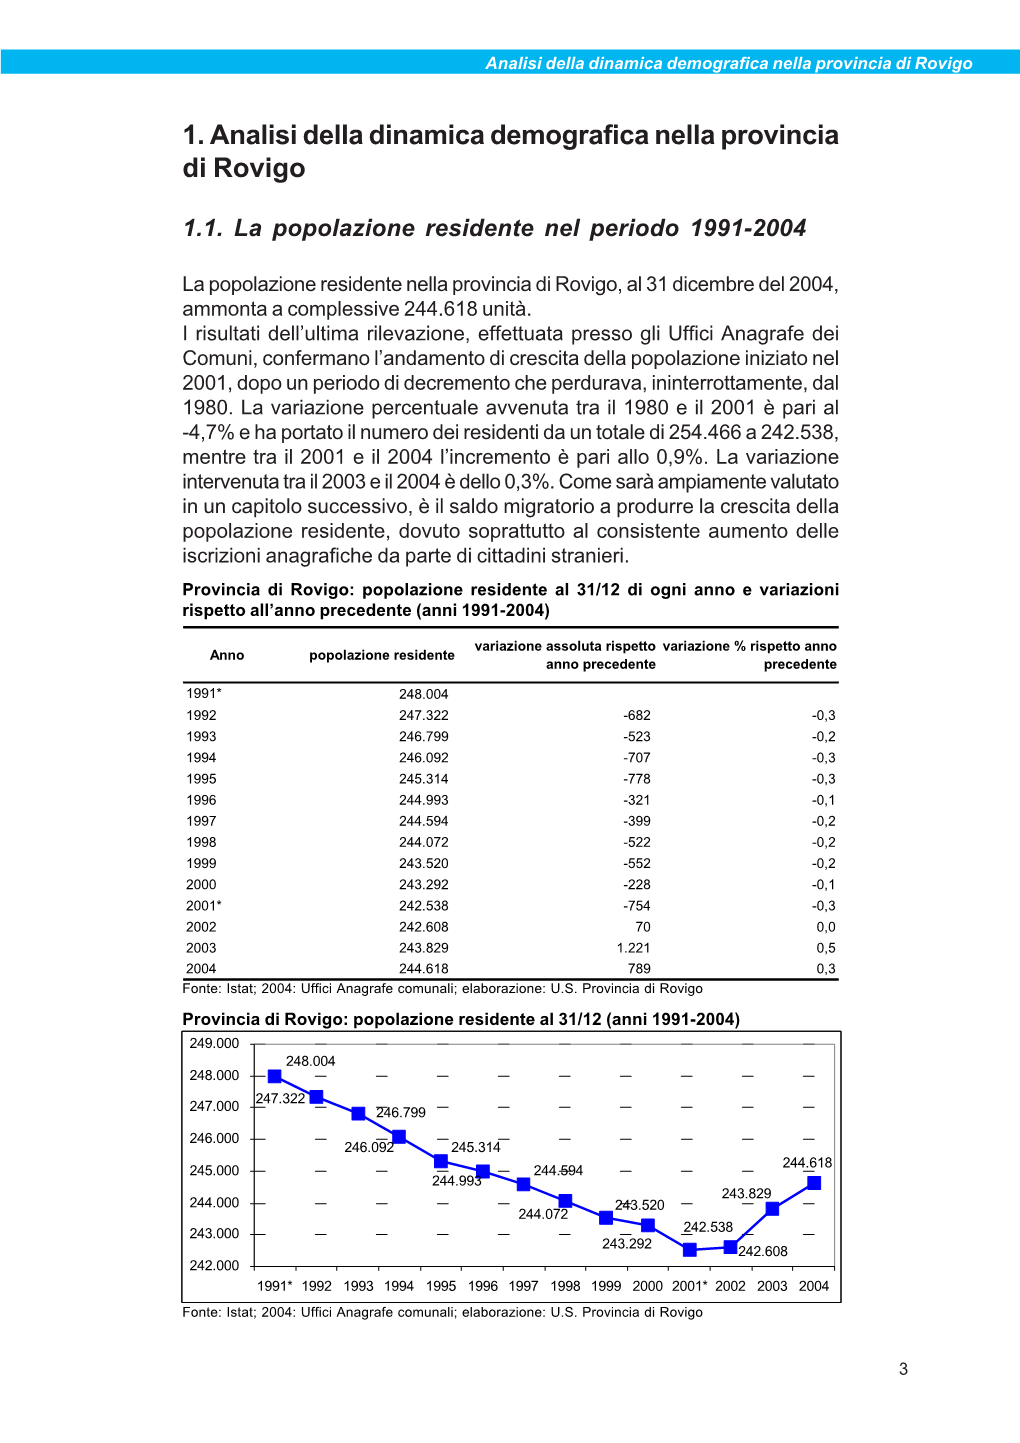 1. Analisi Della Dinamica Demografica Nella Provincia Di Rovigo